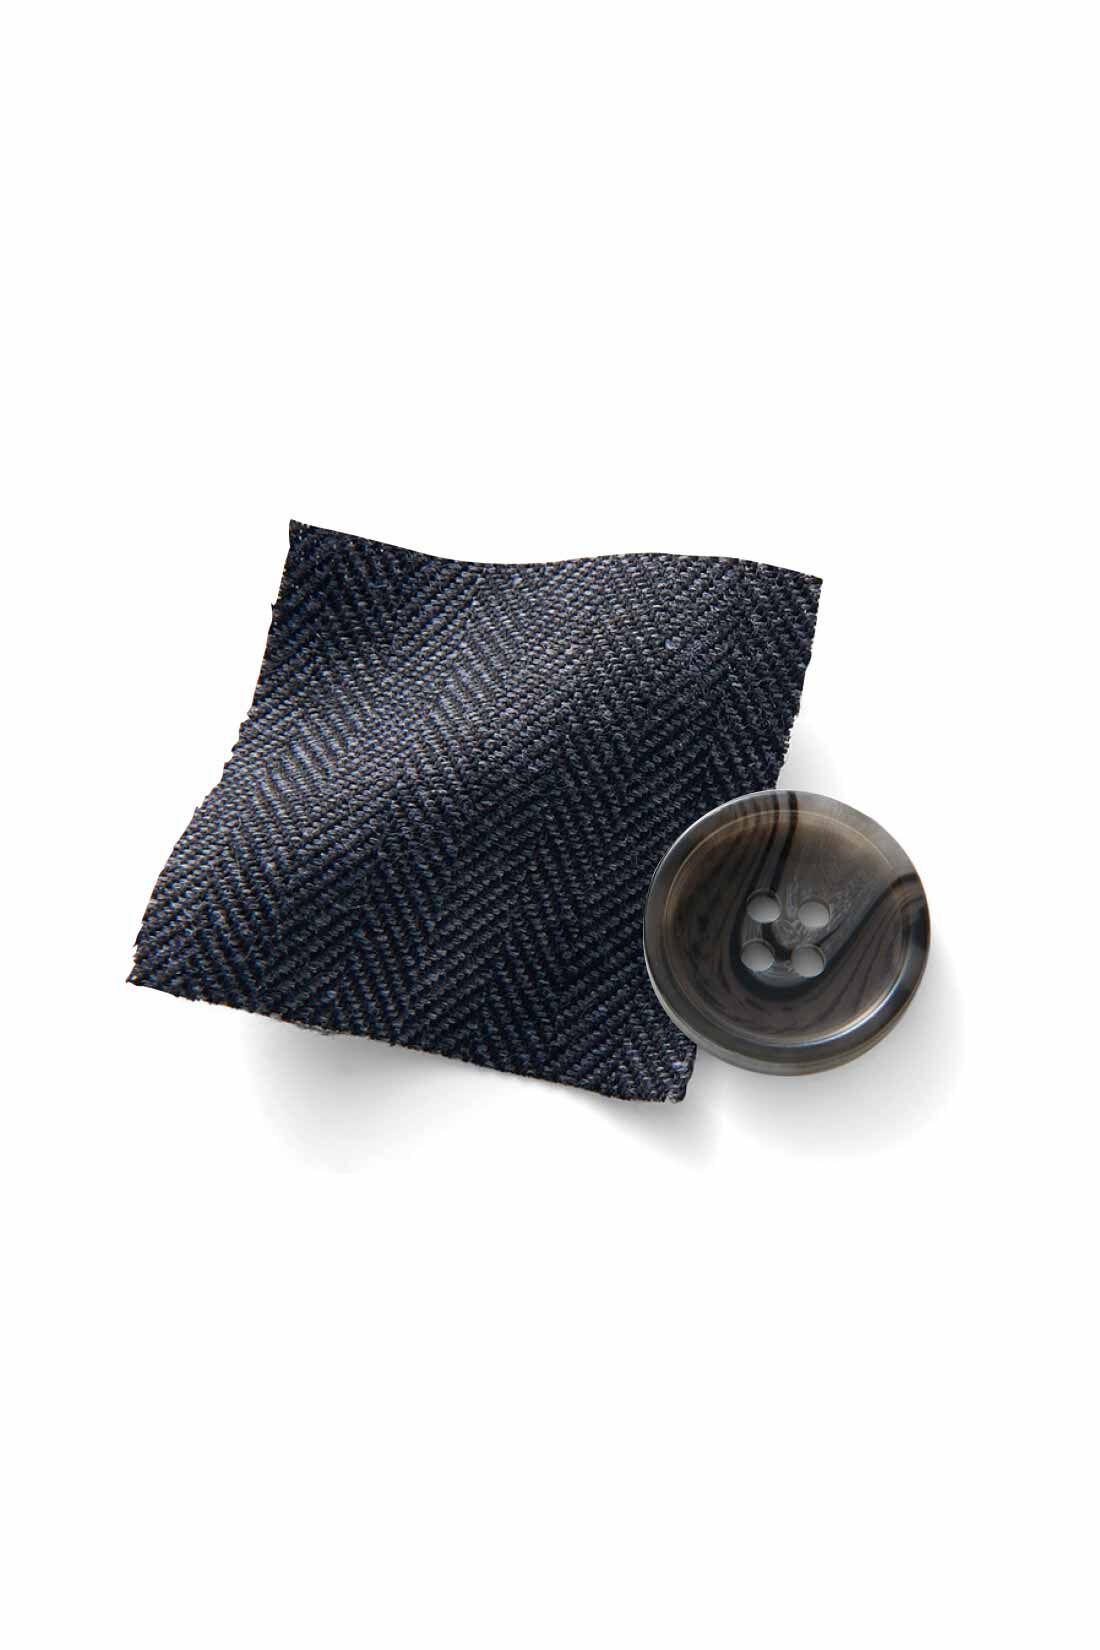 IEDIT|IEDIT[イディット]　小森美穂子さんコラボ ヘリンボーン柄素材でこなれ見えする ダブルボタンジャケット〈ミックスグレー〉|ウールライクな暖かみと、まじめすぎない表情が魅力。ヘリンボーン柄で織り上げた先染め素材。